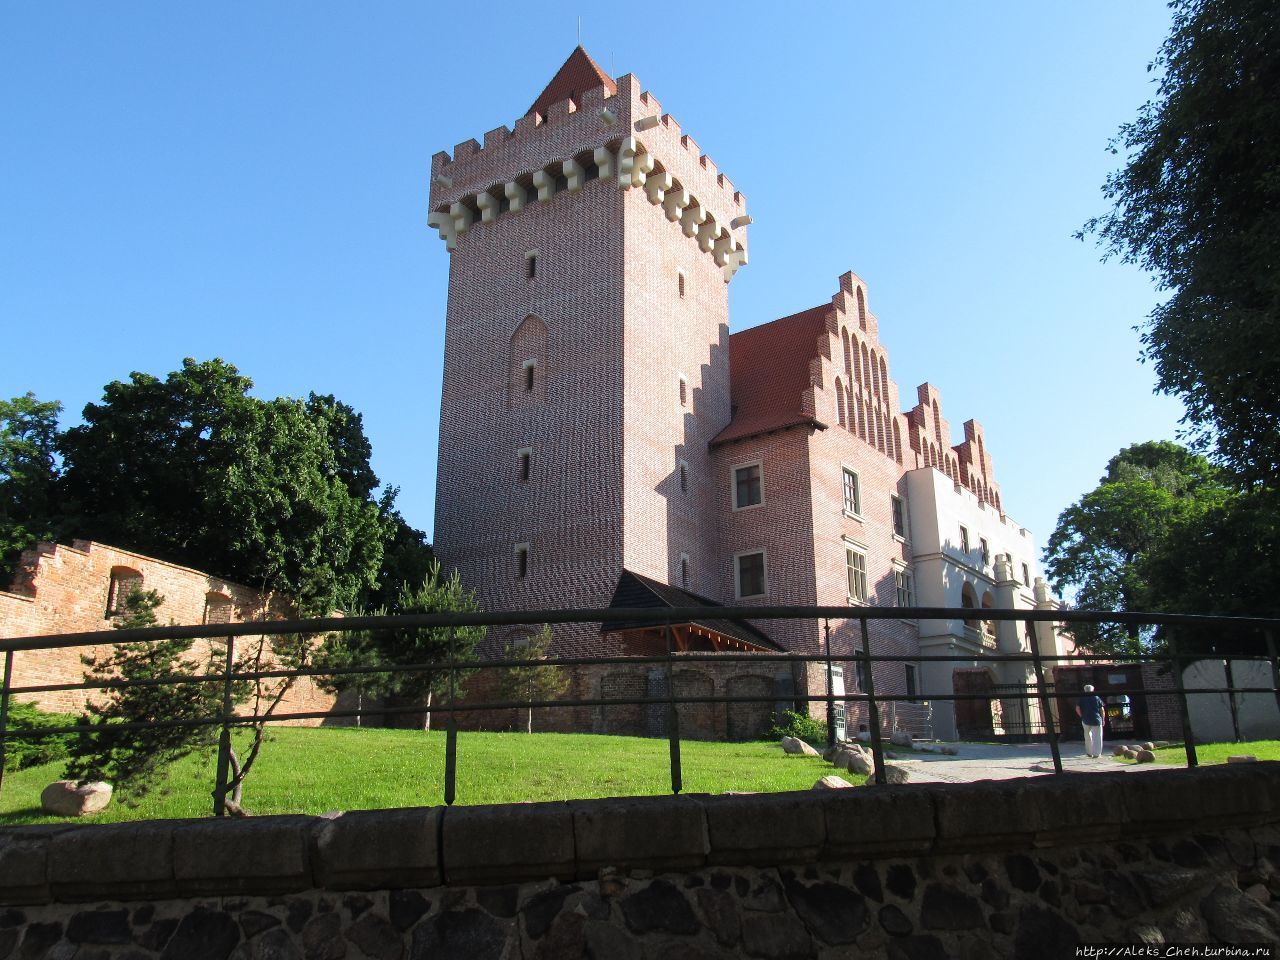 Ренессансный замок был частично разрушен во время Северной войны шведской армией, а затем в 1704 году армиями России и Саксонии. 
Во время Второй мировой войны замок был разрушен.
В 1959-1964 годах была восстановлена башня на фундаменте бывшей кухни. Окончательно замок восстановлен совсем недавно, в 2010-1013 гг.  Эта реконструкция замка была подвергнута критике за допущенные отступления от исторической действительности. Познань, Польша